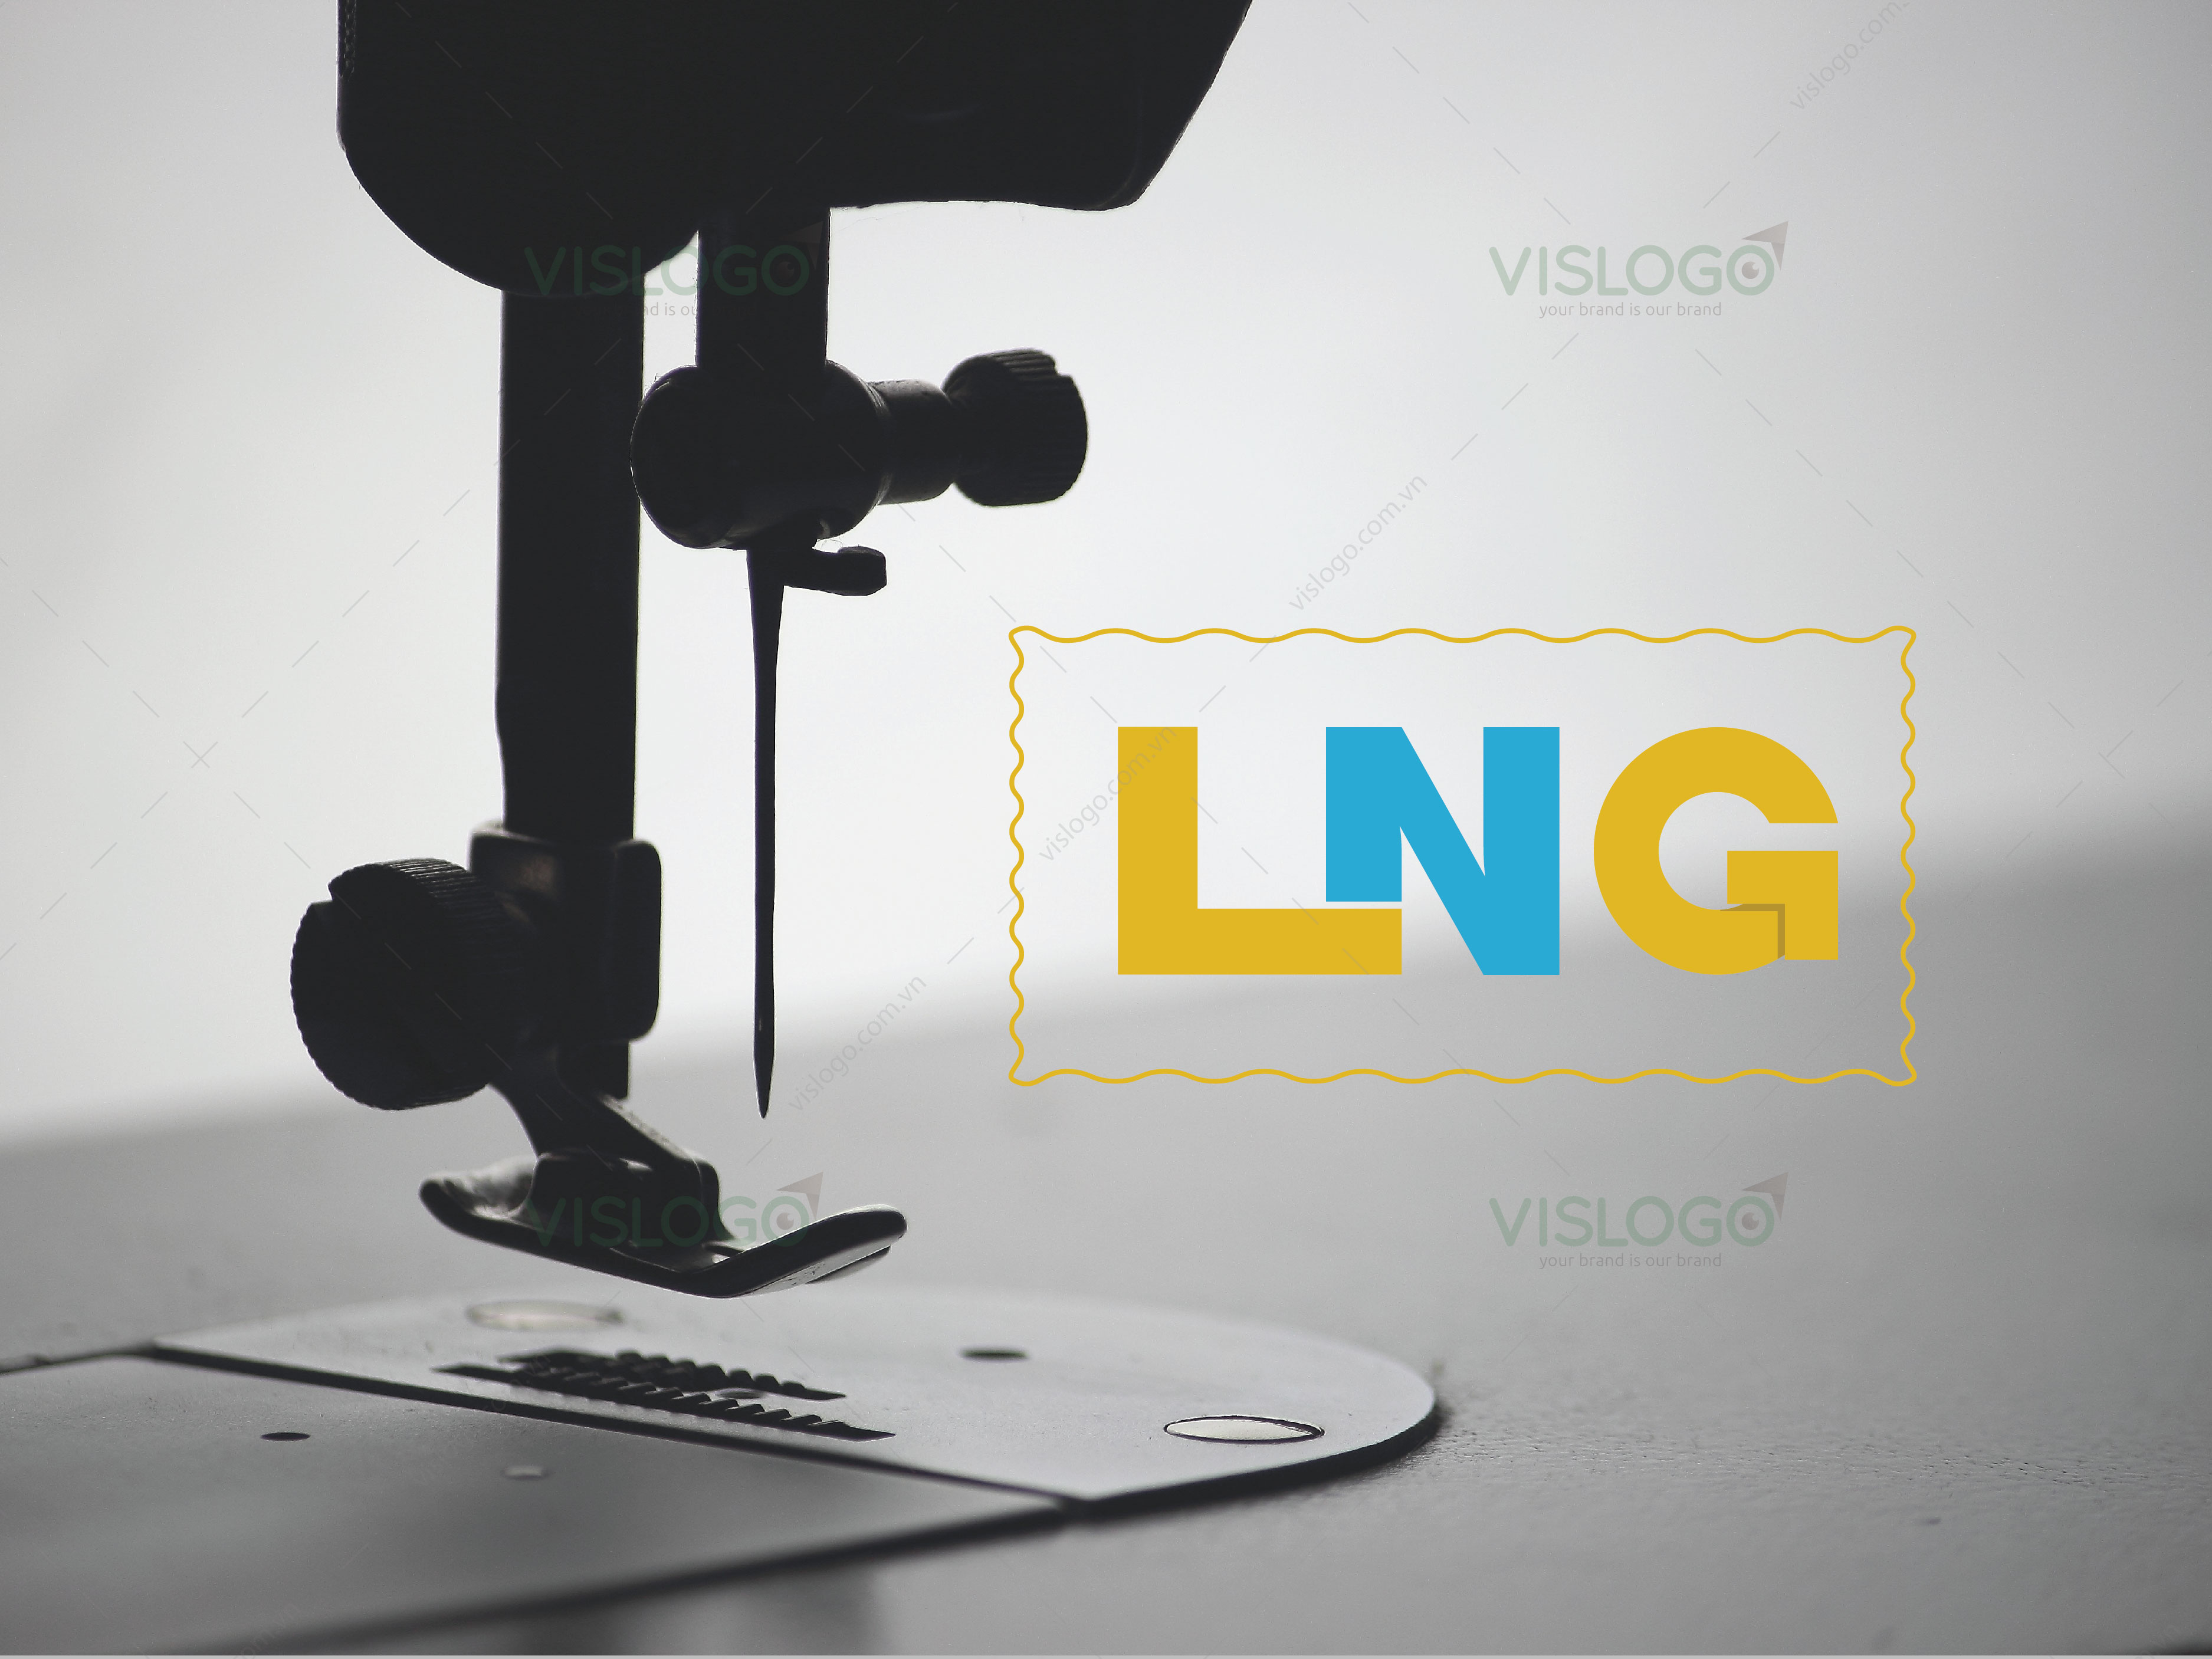 Thiết kế logo, nhận diện thương hiệu May Bắc Giang - LNG